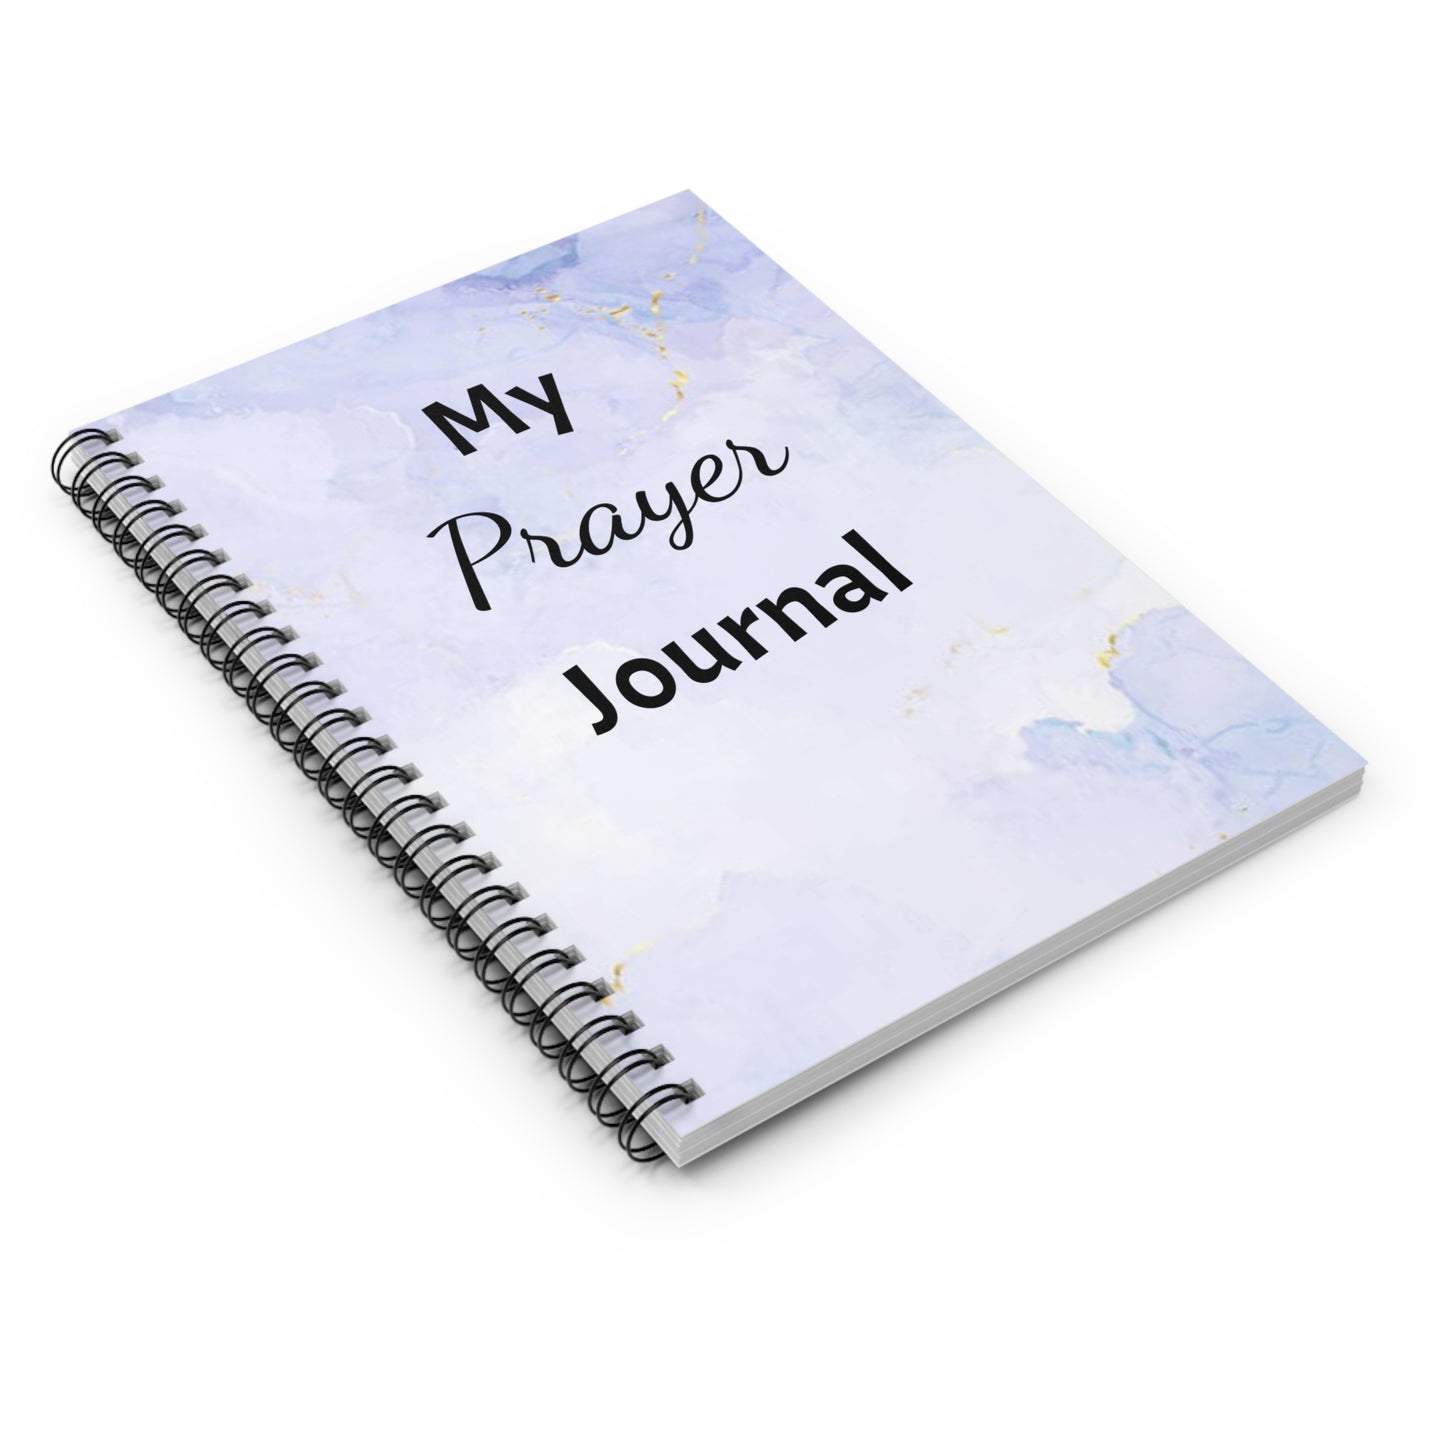 My Prayer Journal Notebook